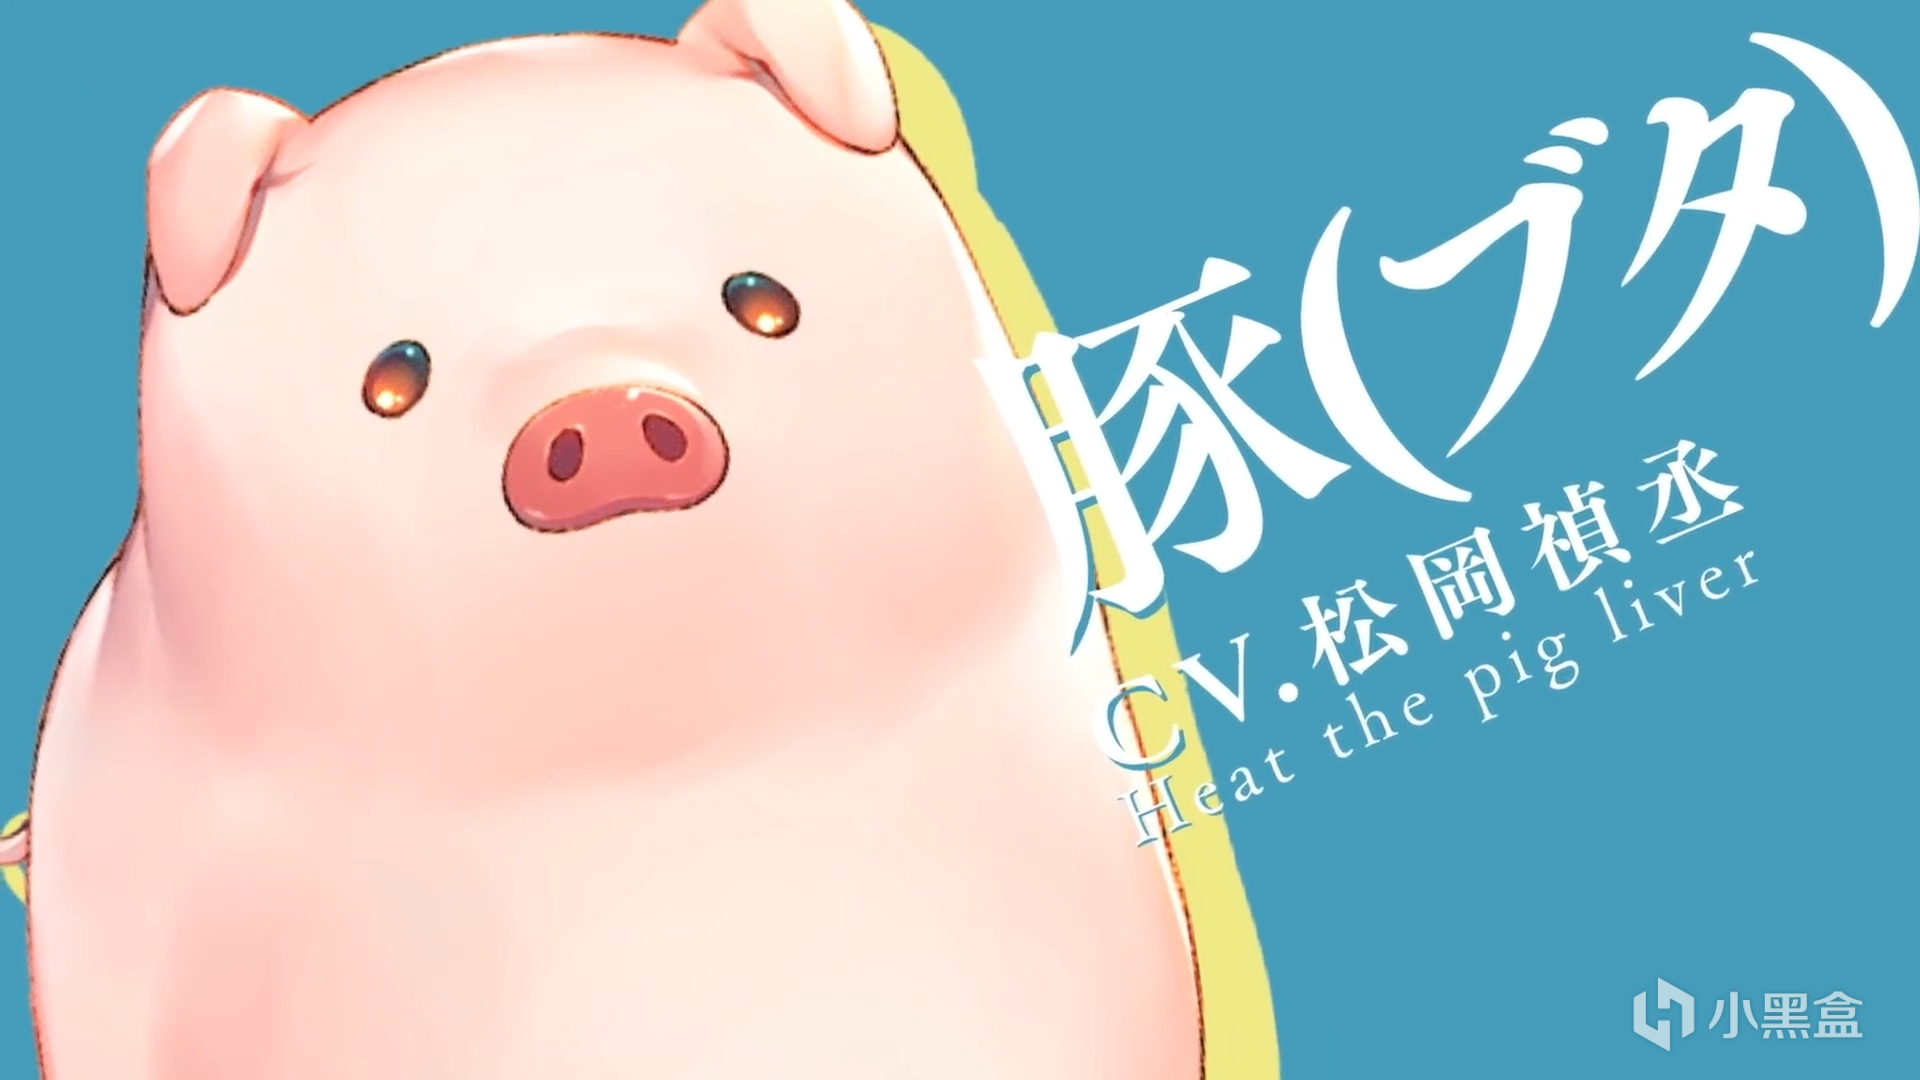 【影视动漫】生吃猪肝的我转生到异世界变成猪拯救美少女《猪肝倒是热热再吃啊》动画化-第5张